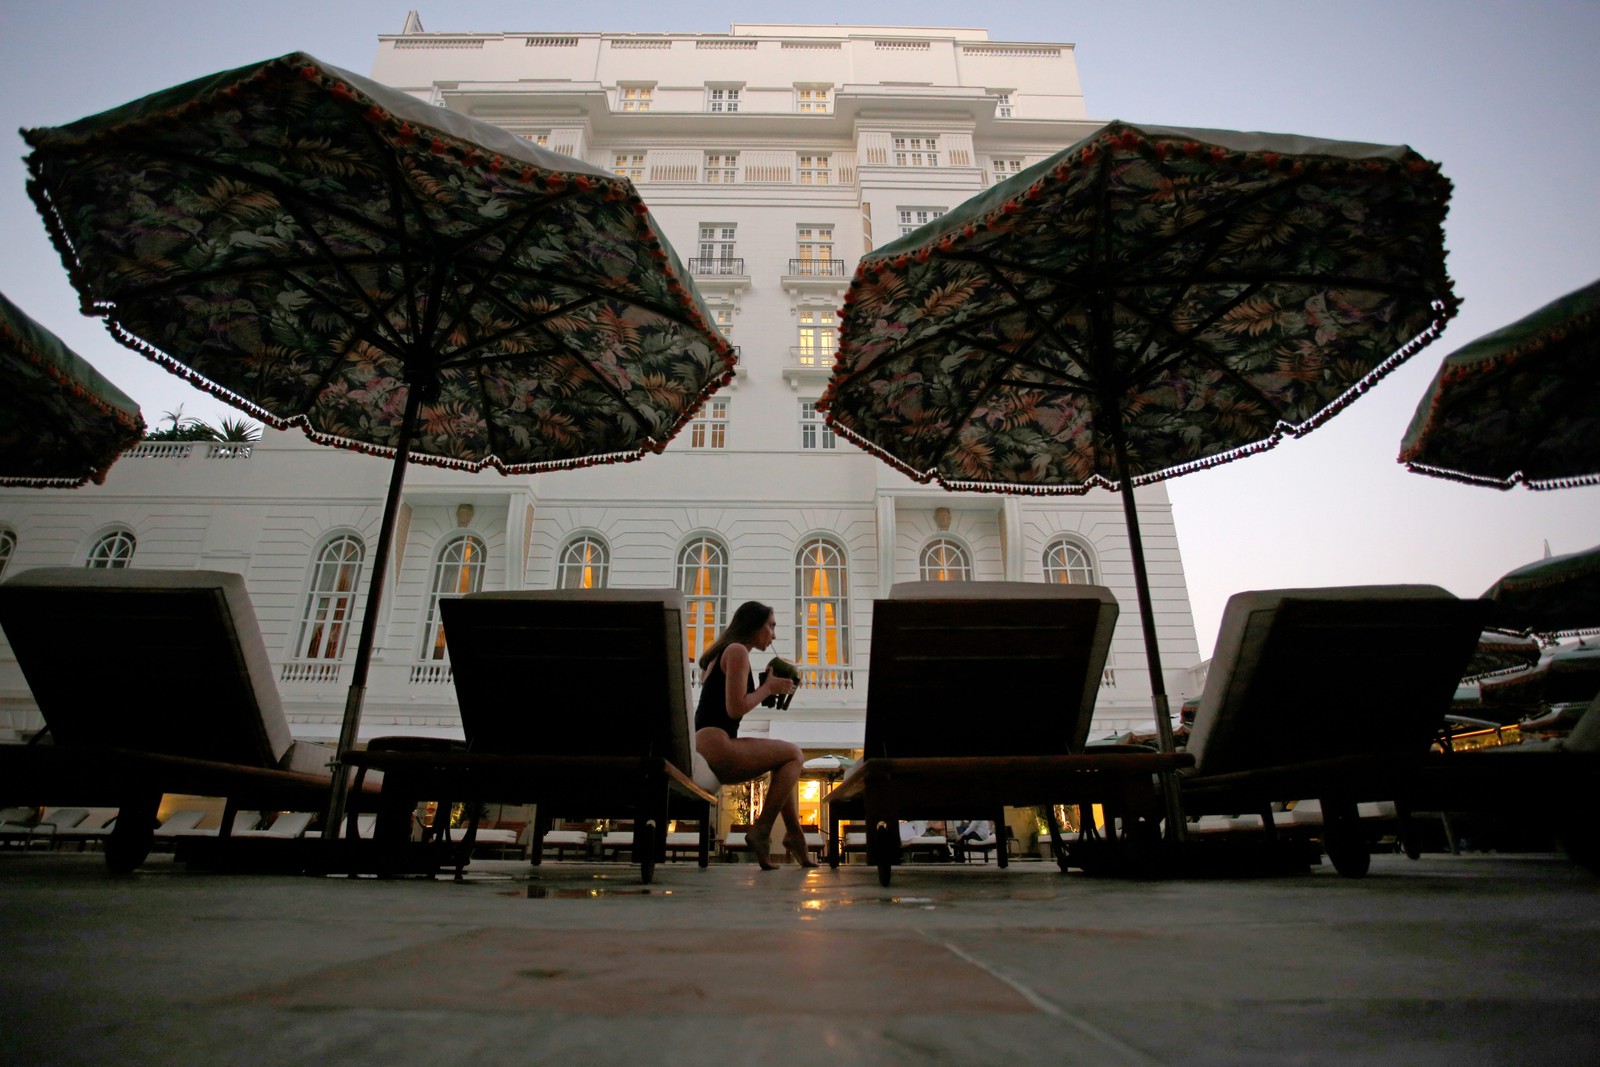 A modernização de ombrelones e espreguiçadeiras fez parte dos preparativos para o centenário — Foto: Custodio Coimbra / Agência O Globo